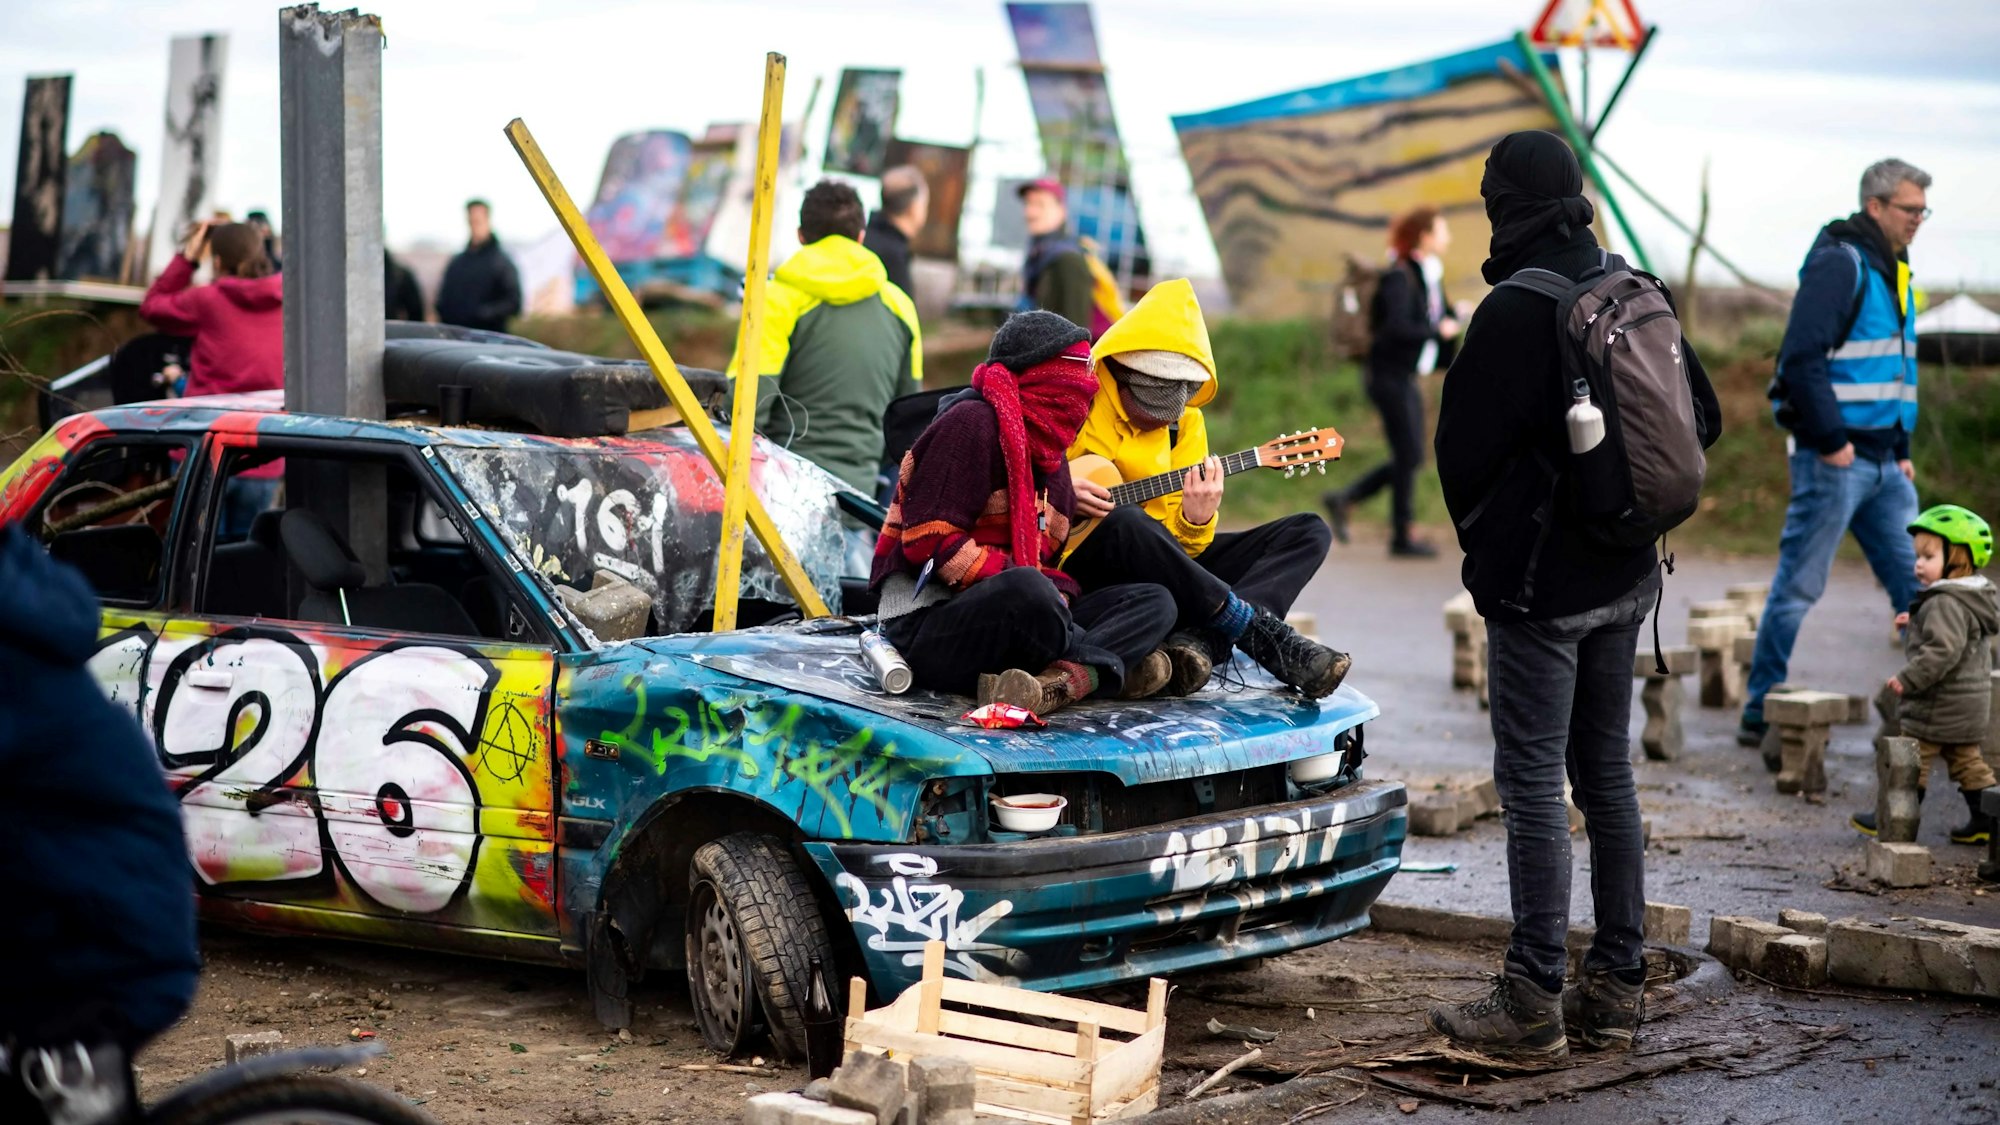 Auf einem kaputten Auto sitzen zwei Klimaaktivisten, die Musik machen.